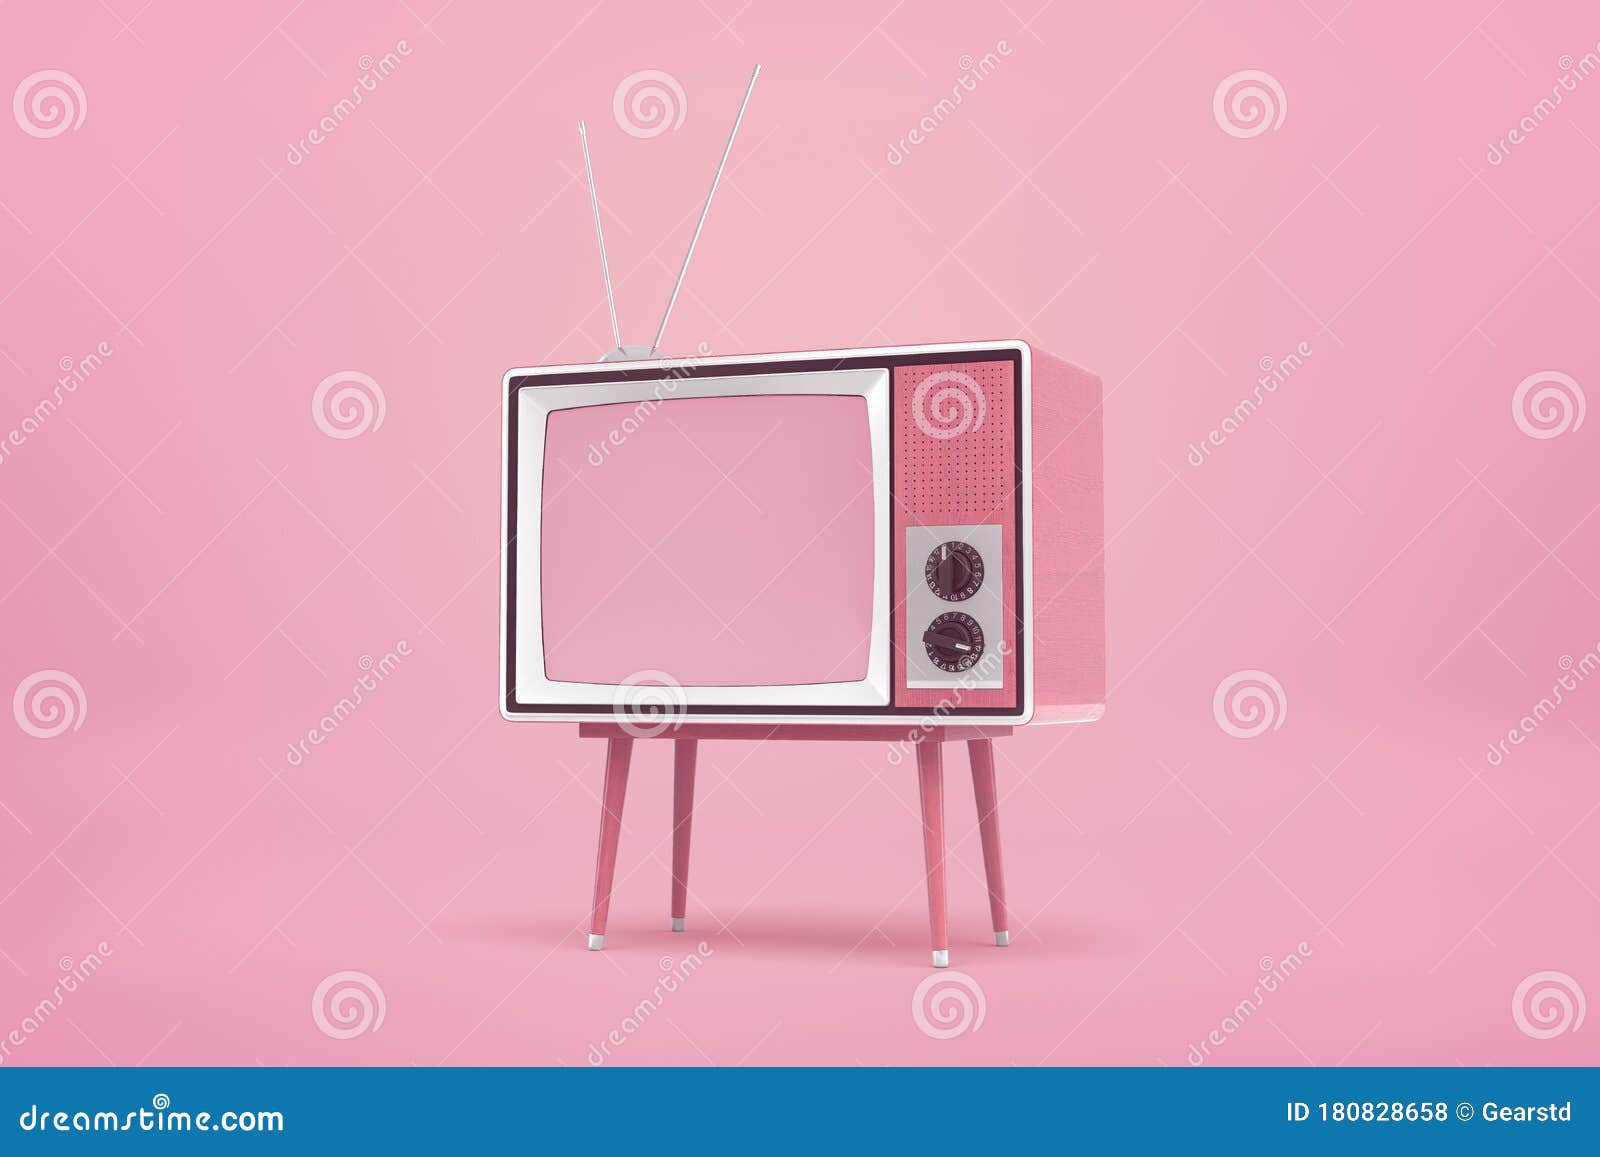 Bạn cảm thấy yêu thích màu hồng và không gian retro? Hãy xem bức ảnh về chiếc TV cũ màu hồng trên nền hồng này. Với vẻ ngoài đầy dịu dàng và ngọt ngào, chiếc TV này sẽ trở thành một điểm nhấn nổi bật trong không gian sống của bạn. Hãy tưởng tượng, bạn đang ngồi trên ghế sofa và thưởng thức những bộ phim yêu thích trên chiếc TV này.